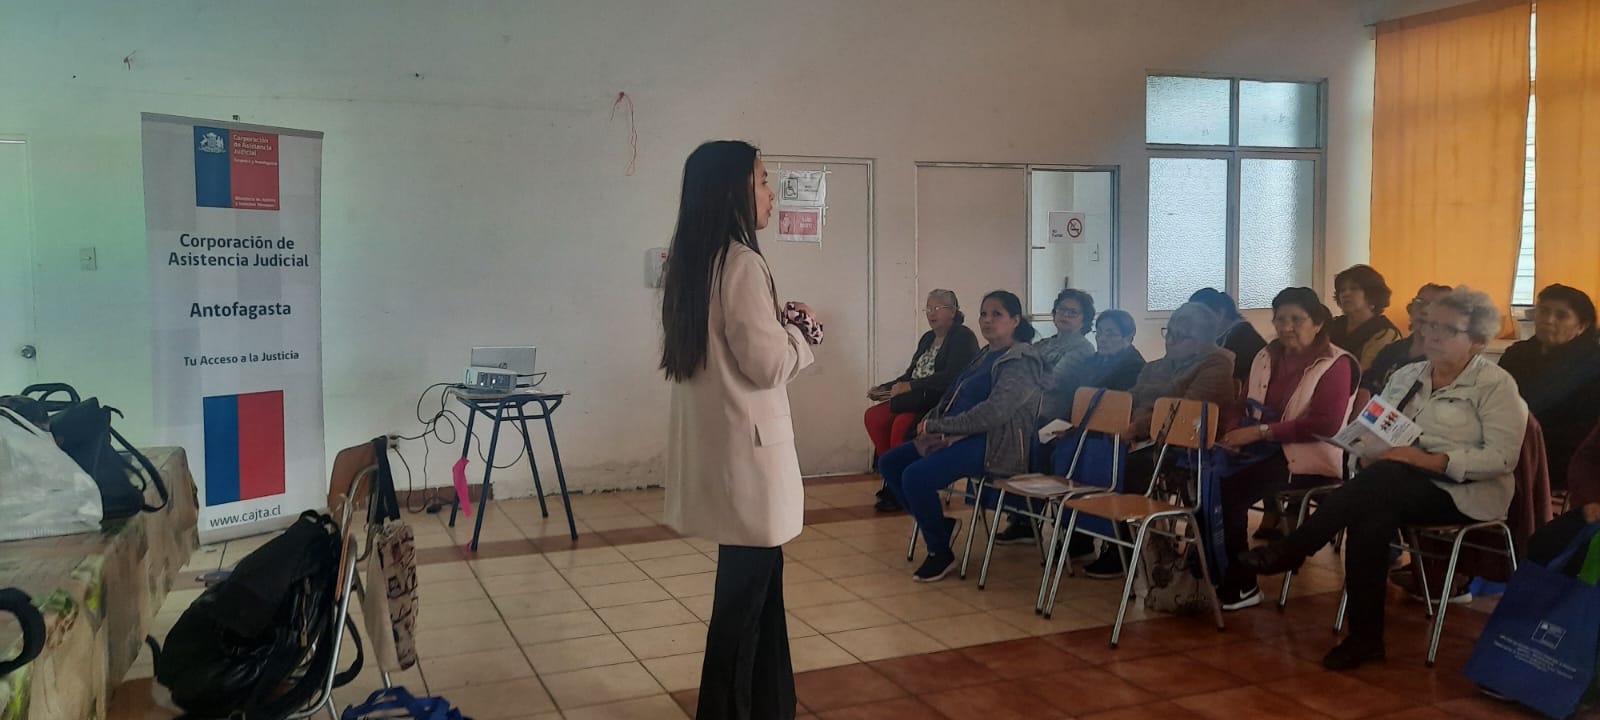 Unidad del Adulto Mayor de Antofagasta realizó charla al Club de Adulto Mayor “Esperando un Nuevo Día”